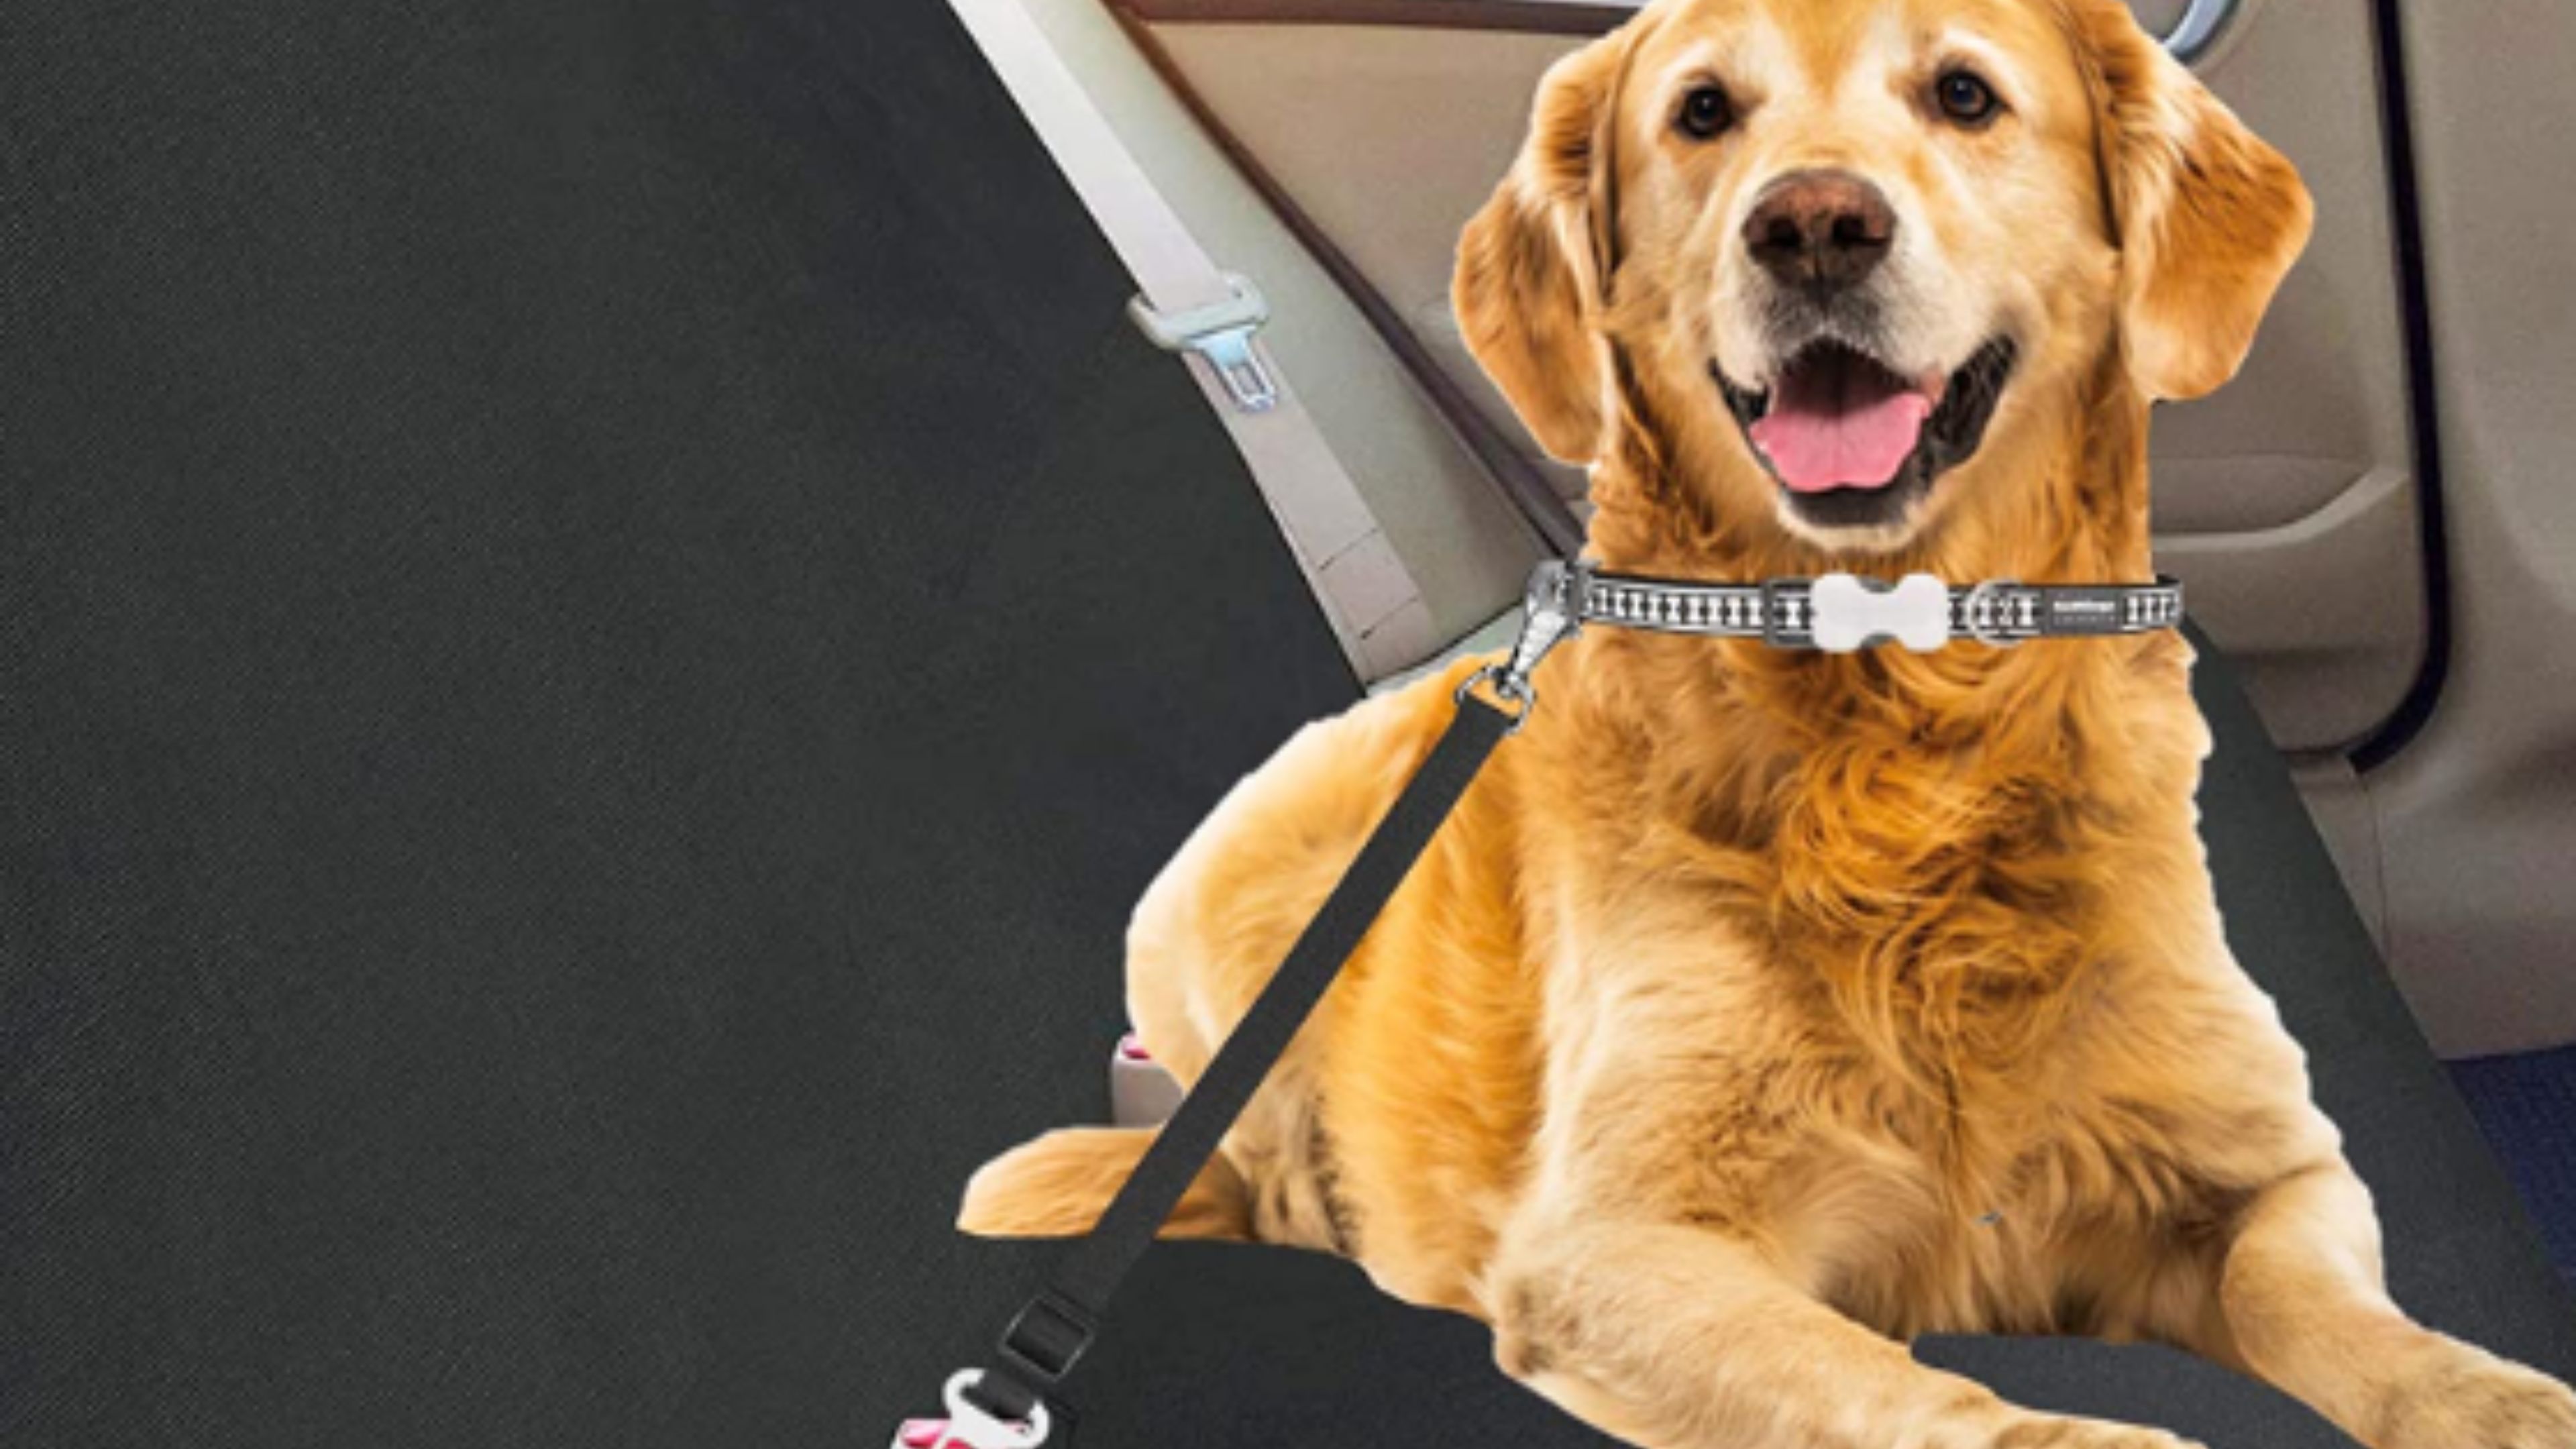 Protege tus asientos y a tu perro con esta funda y cinturón de seguridad por solo 15 euros